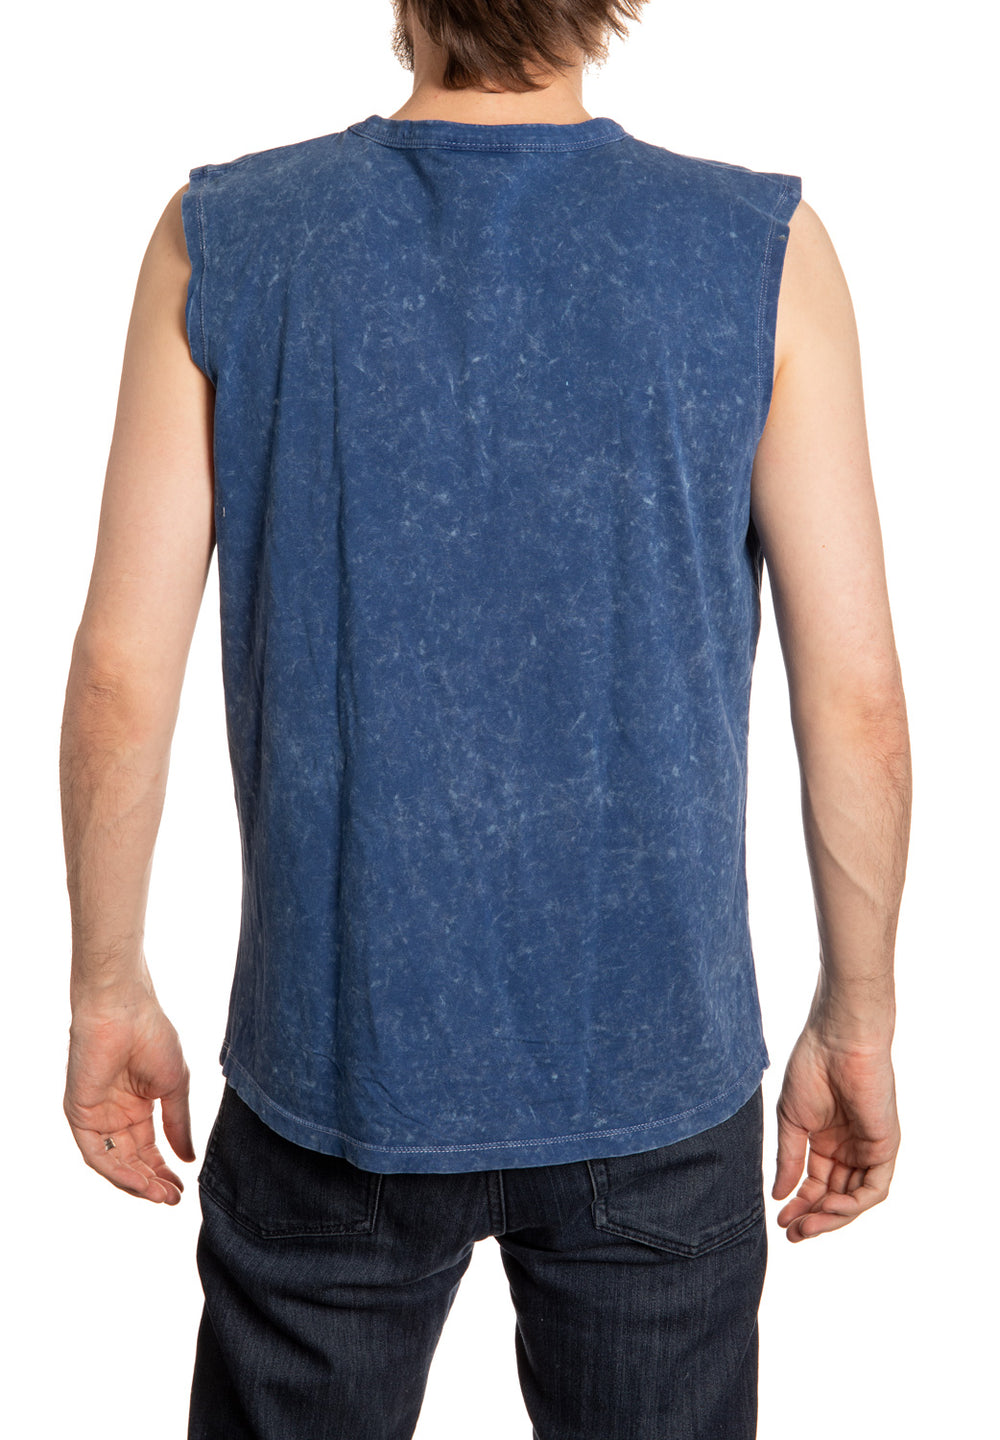 Seattle Kraken Acid Washed Sleeveless Shirt Back View